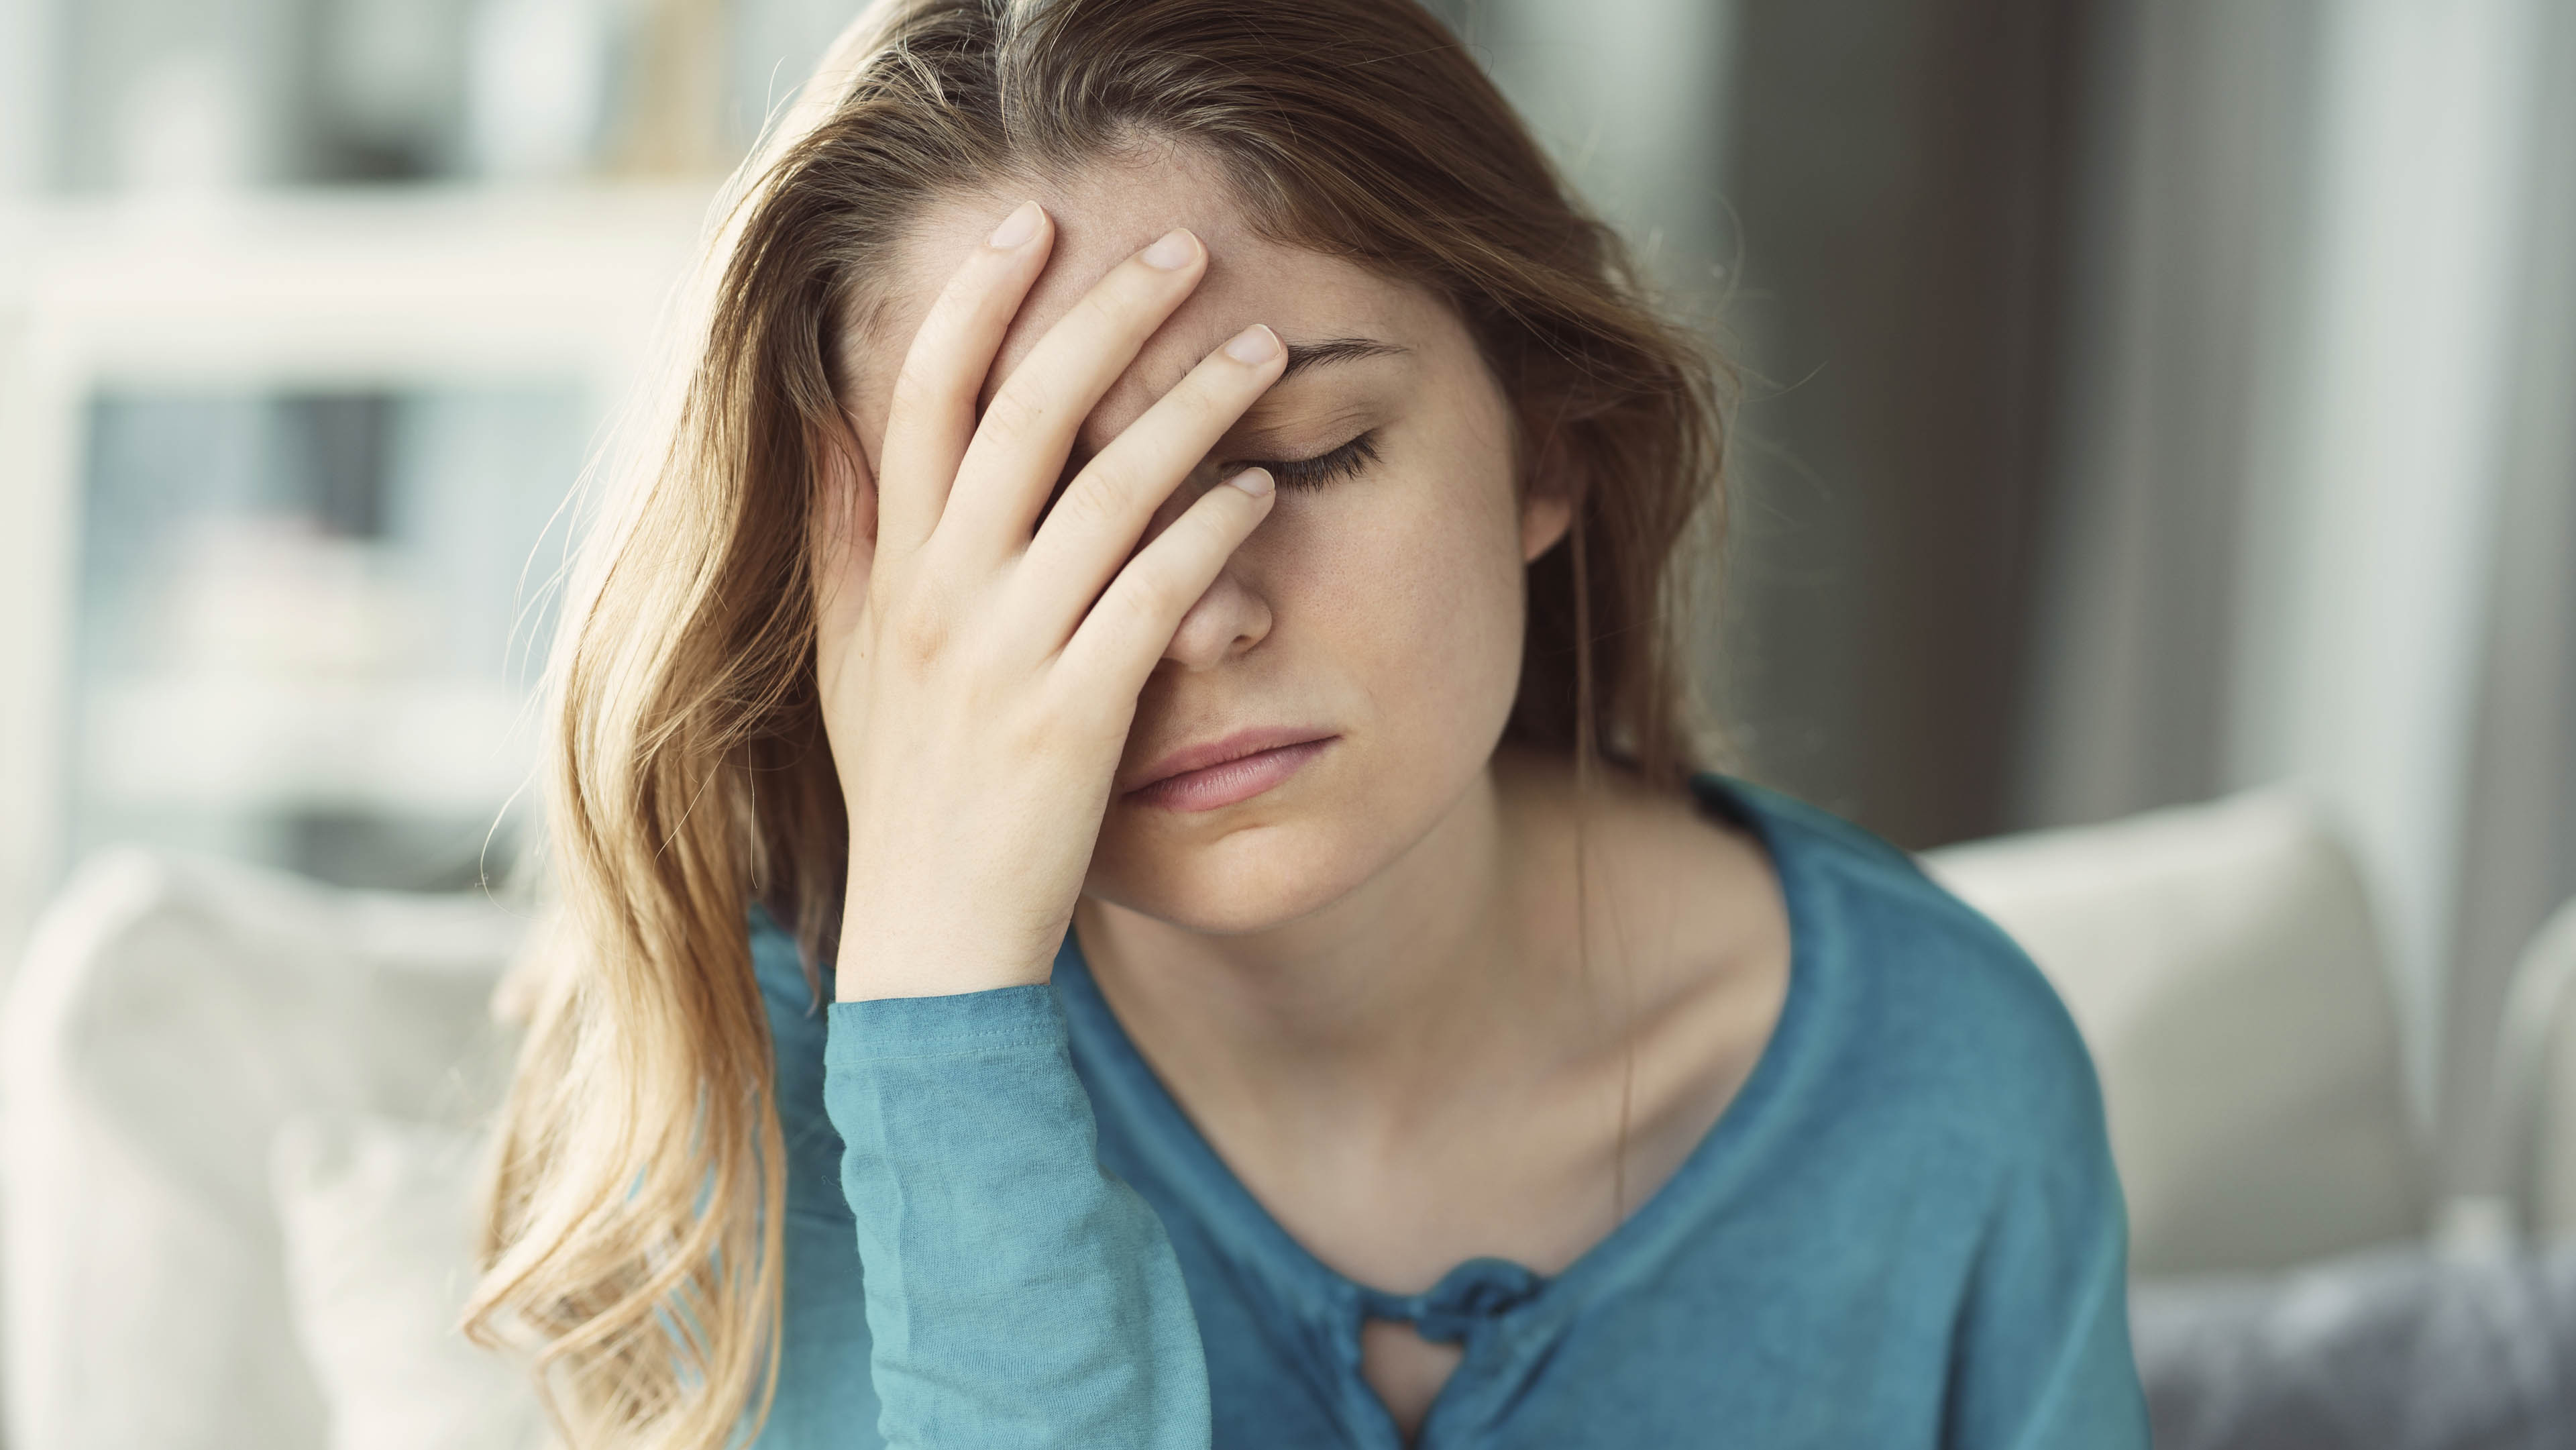 Căng thẳng đầu óc có thể gây ra những vấn đề gì khác trong cuộc sống hàng ngày?
